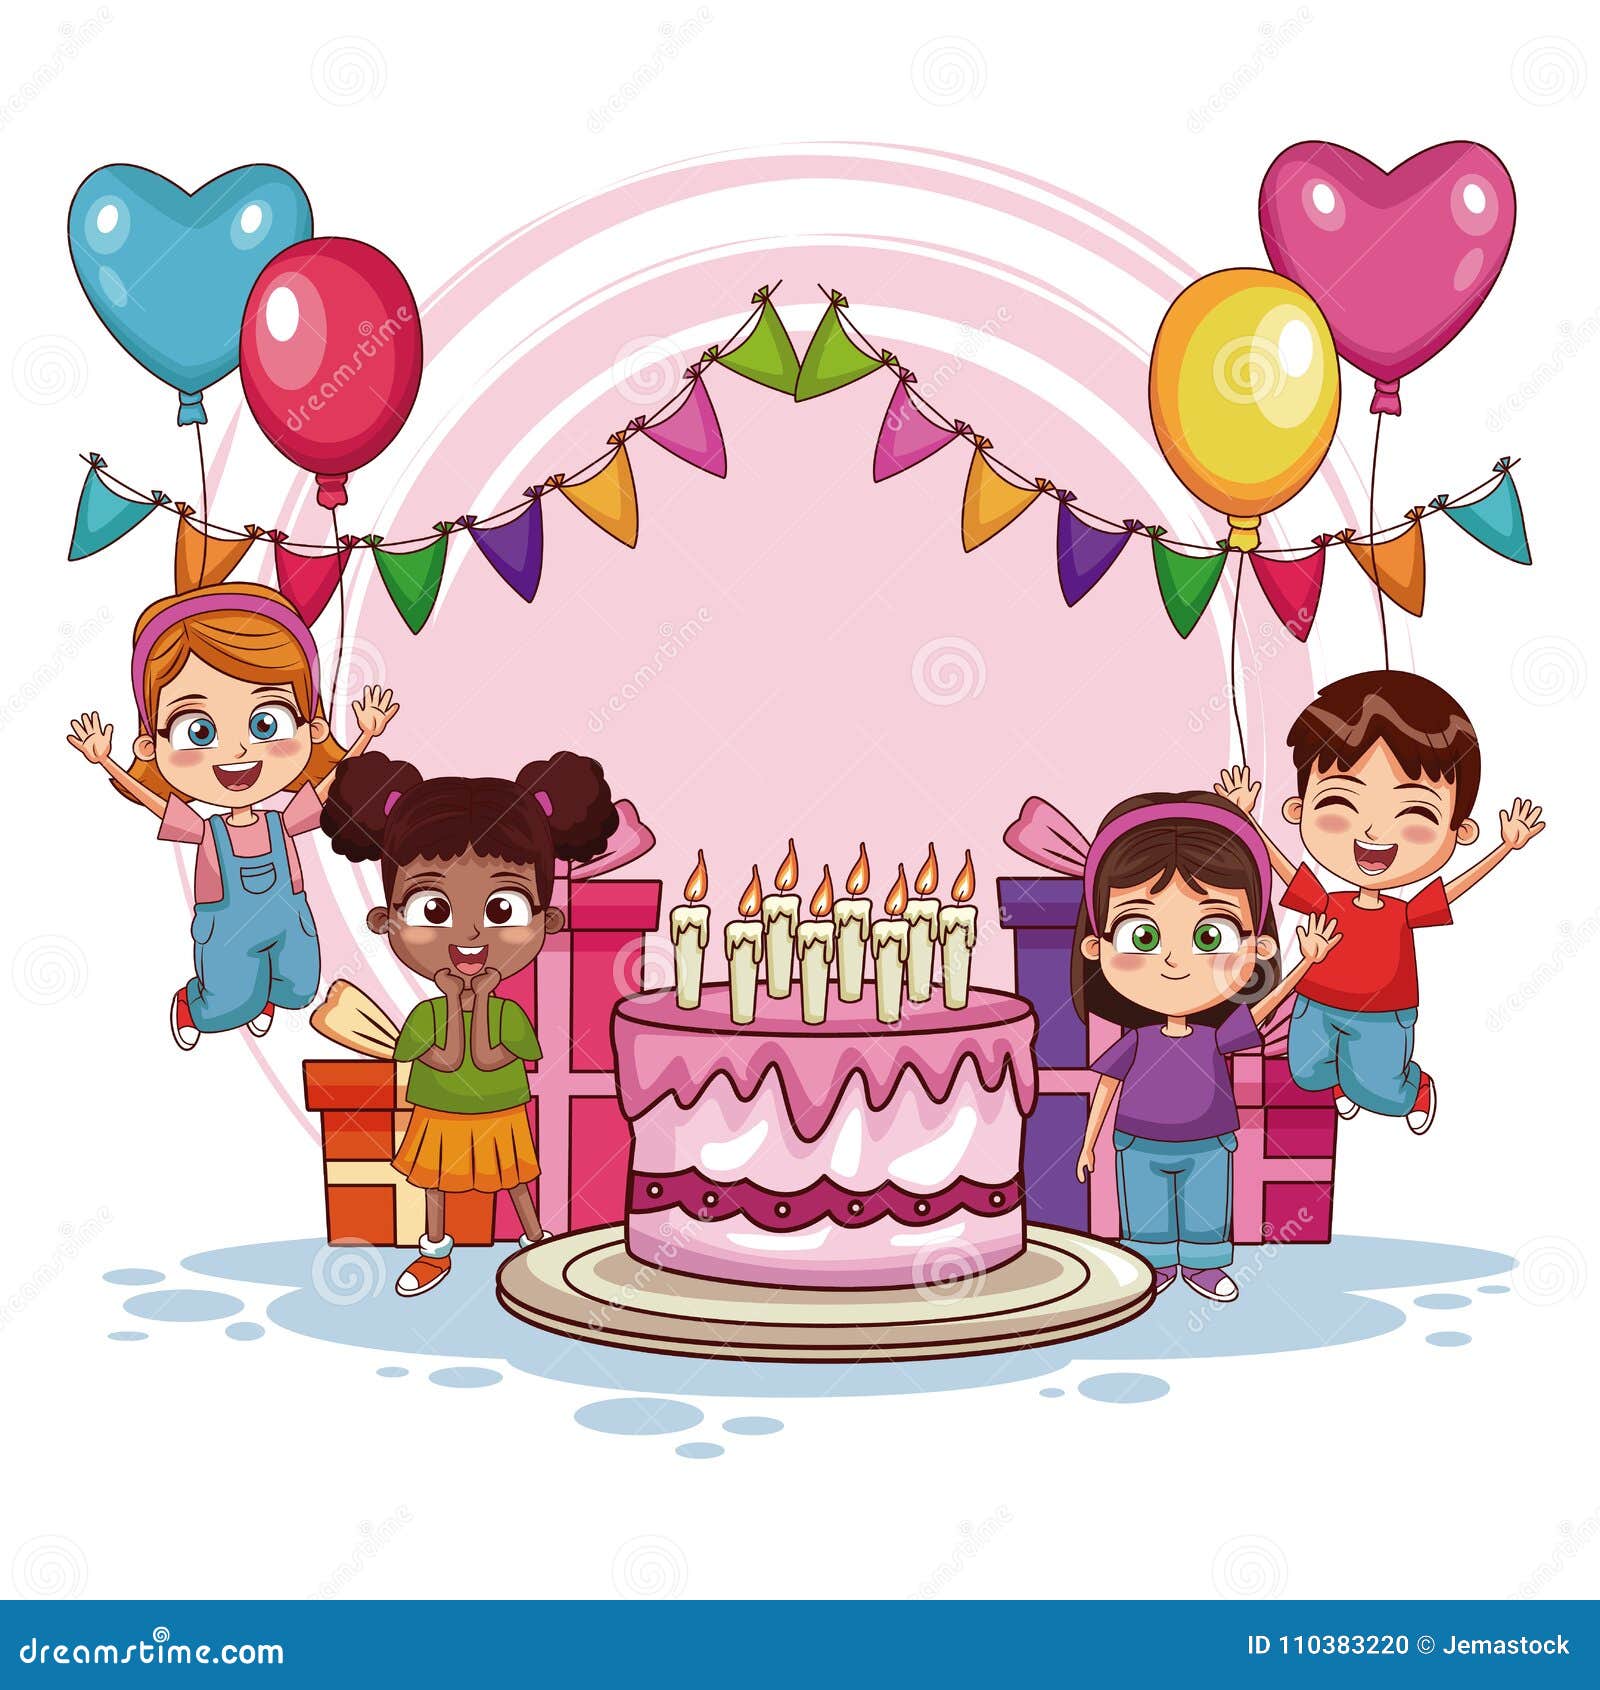 Ilustración de la fiesta de cumpleaños de los niños, decoración